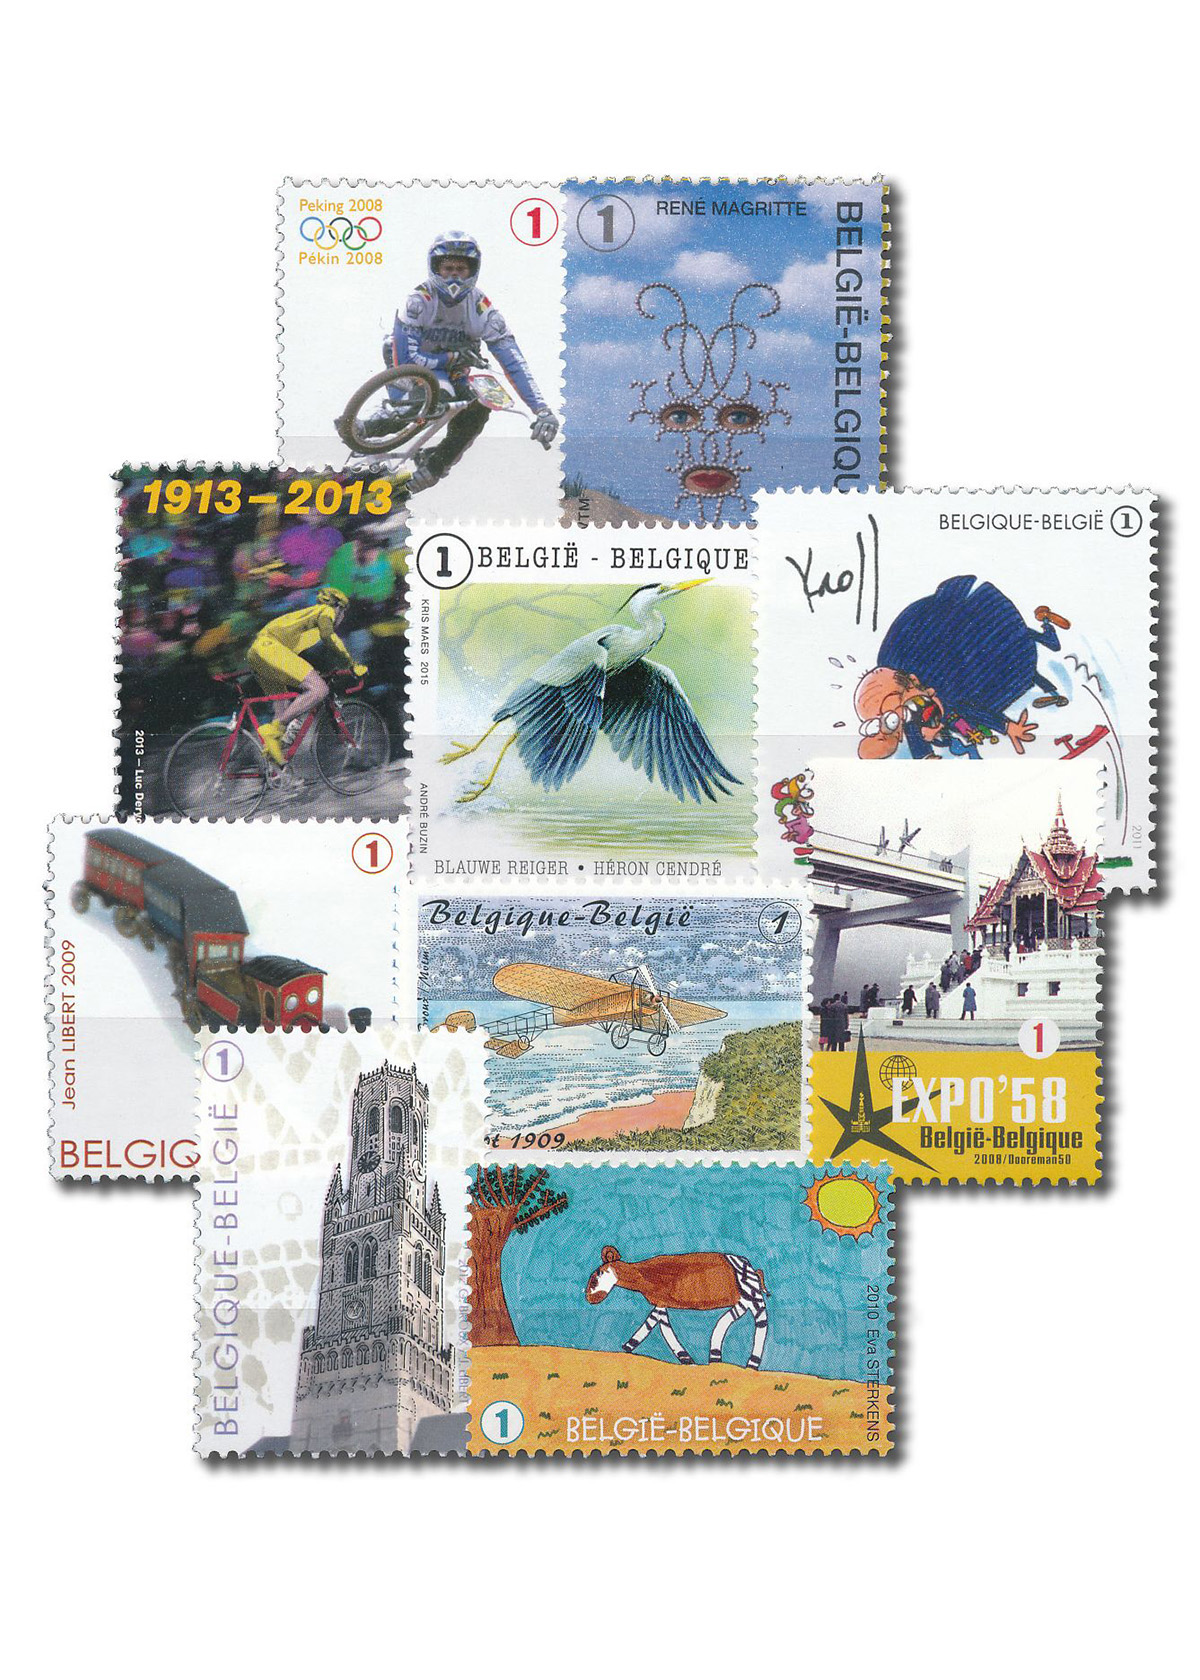 Acheter des timbres